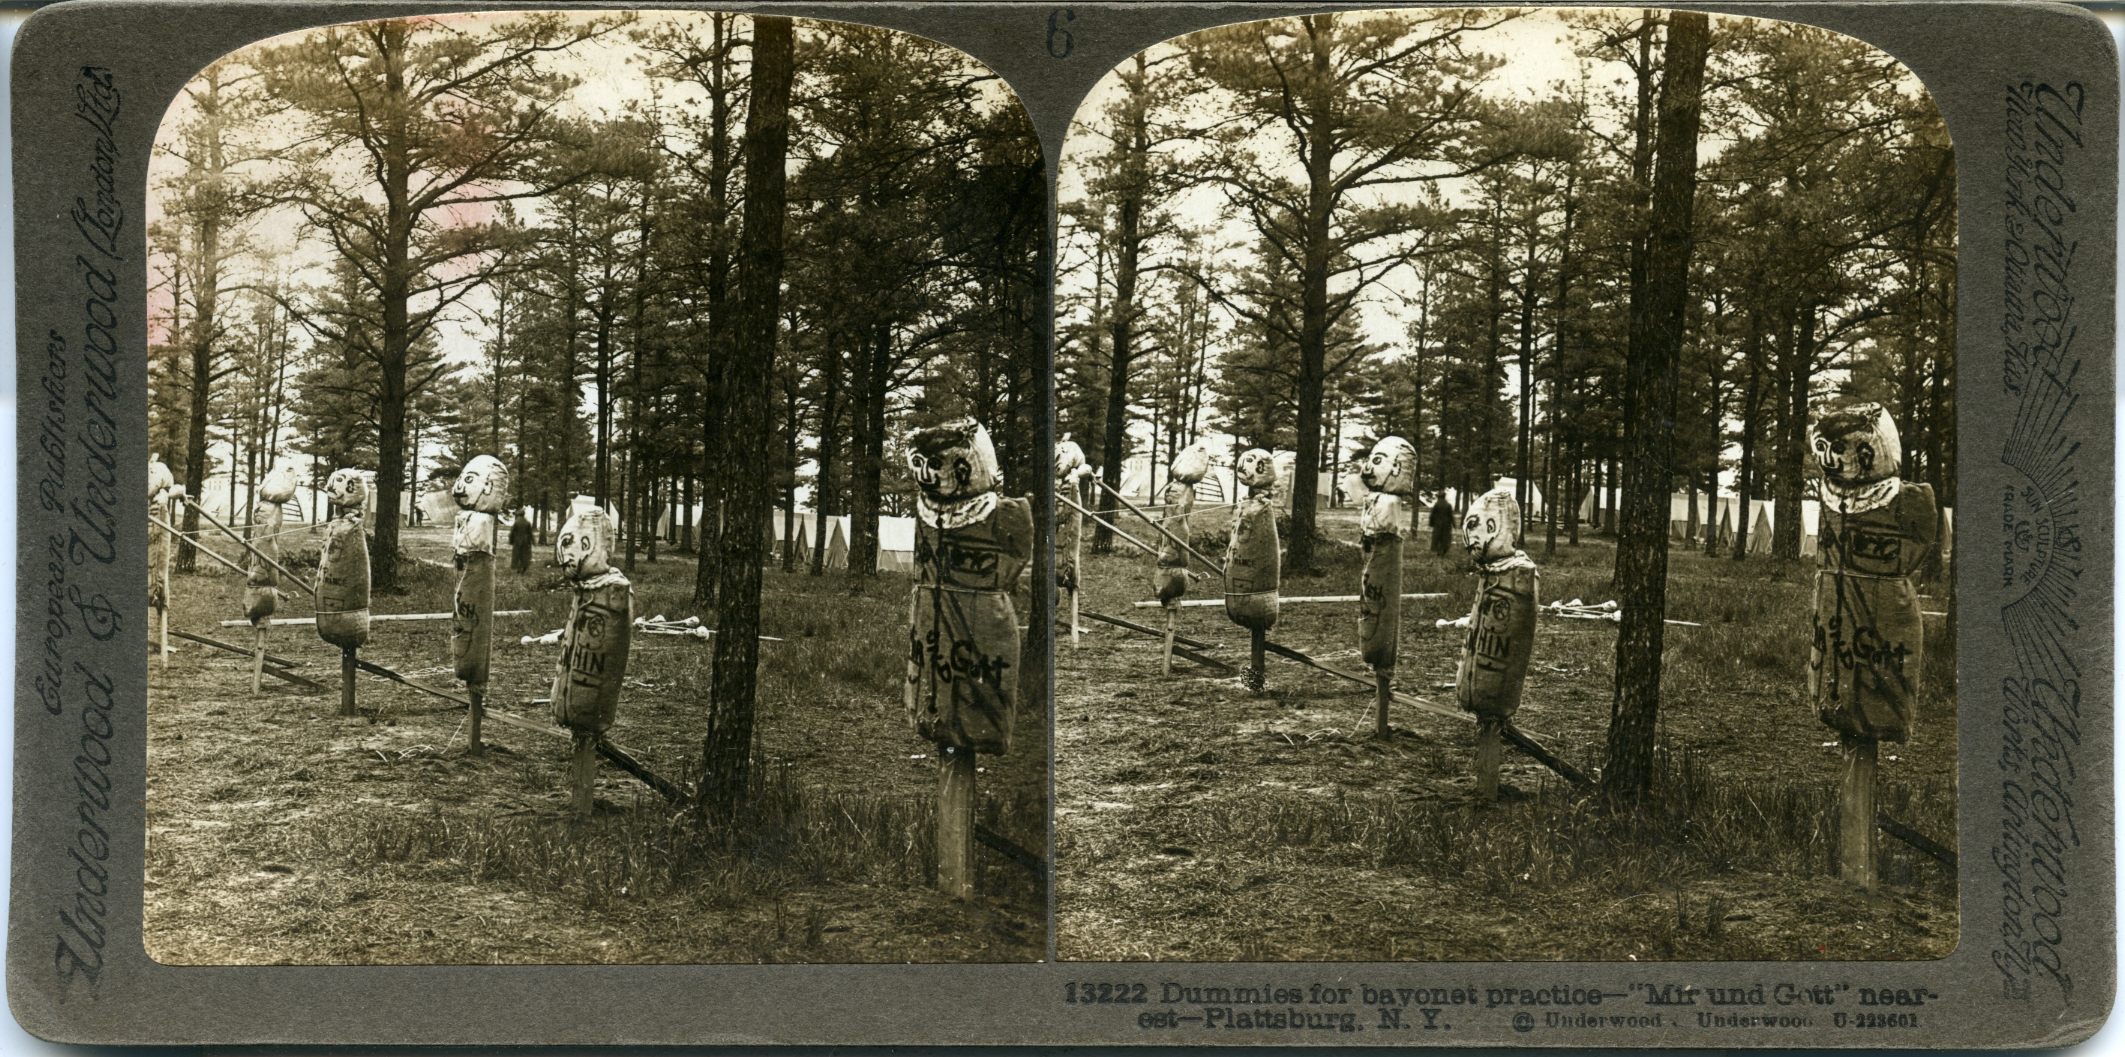 Dummies for bayonet practice - "Mir und Gott" nearest - Plattsburg, N.Y.